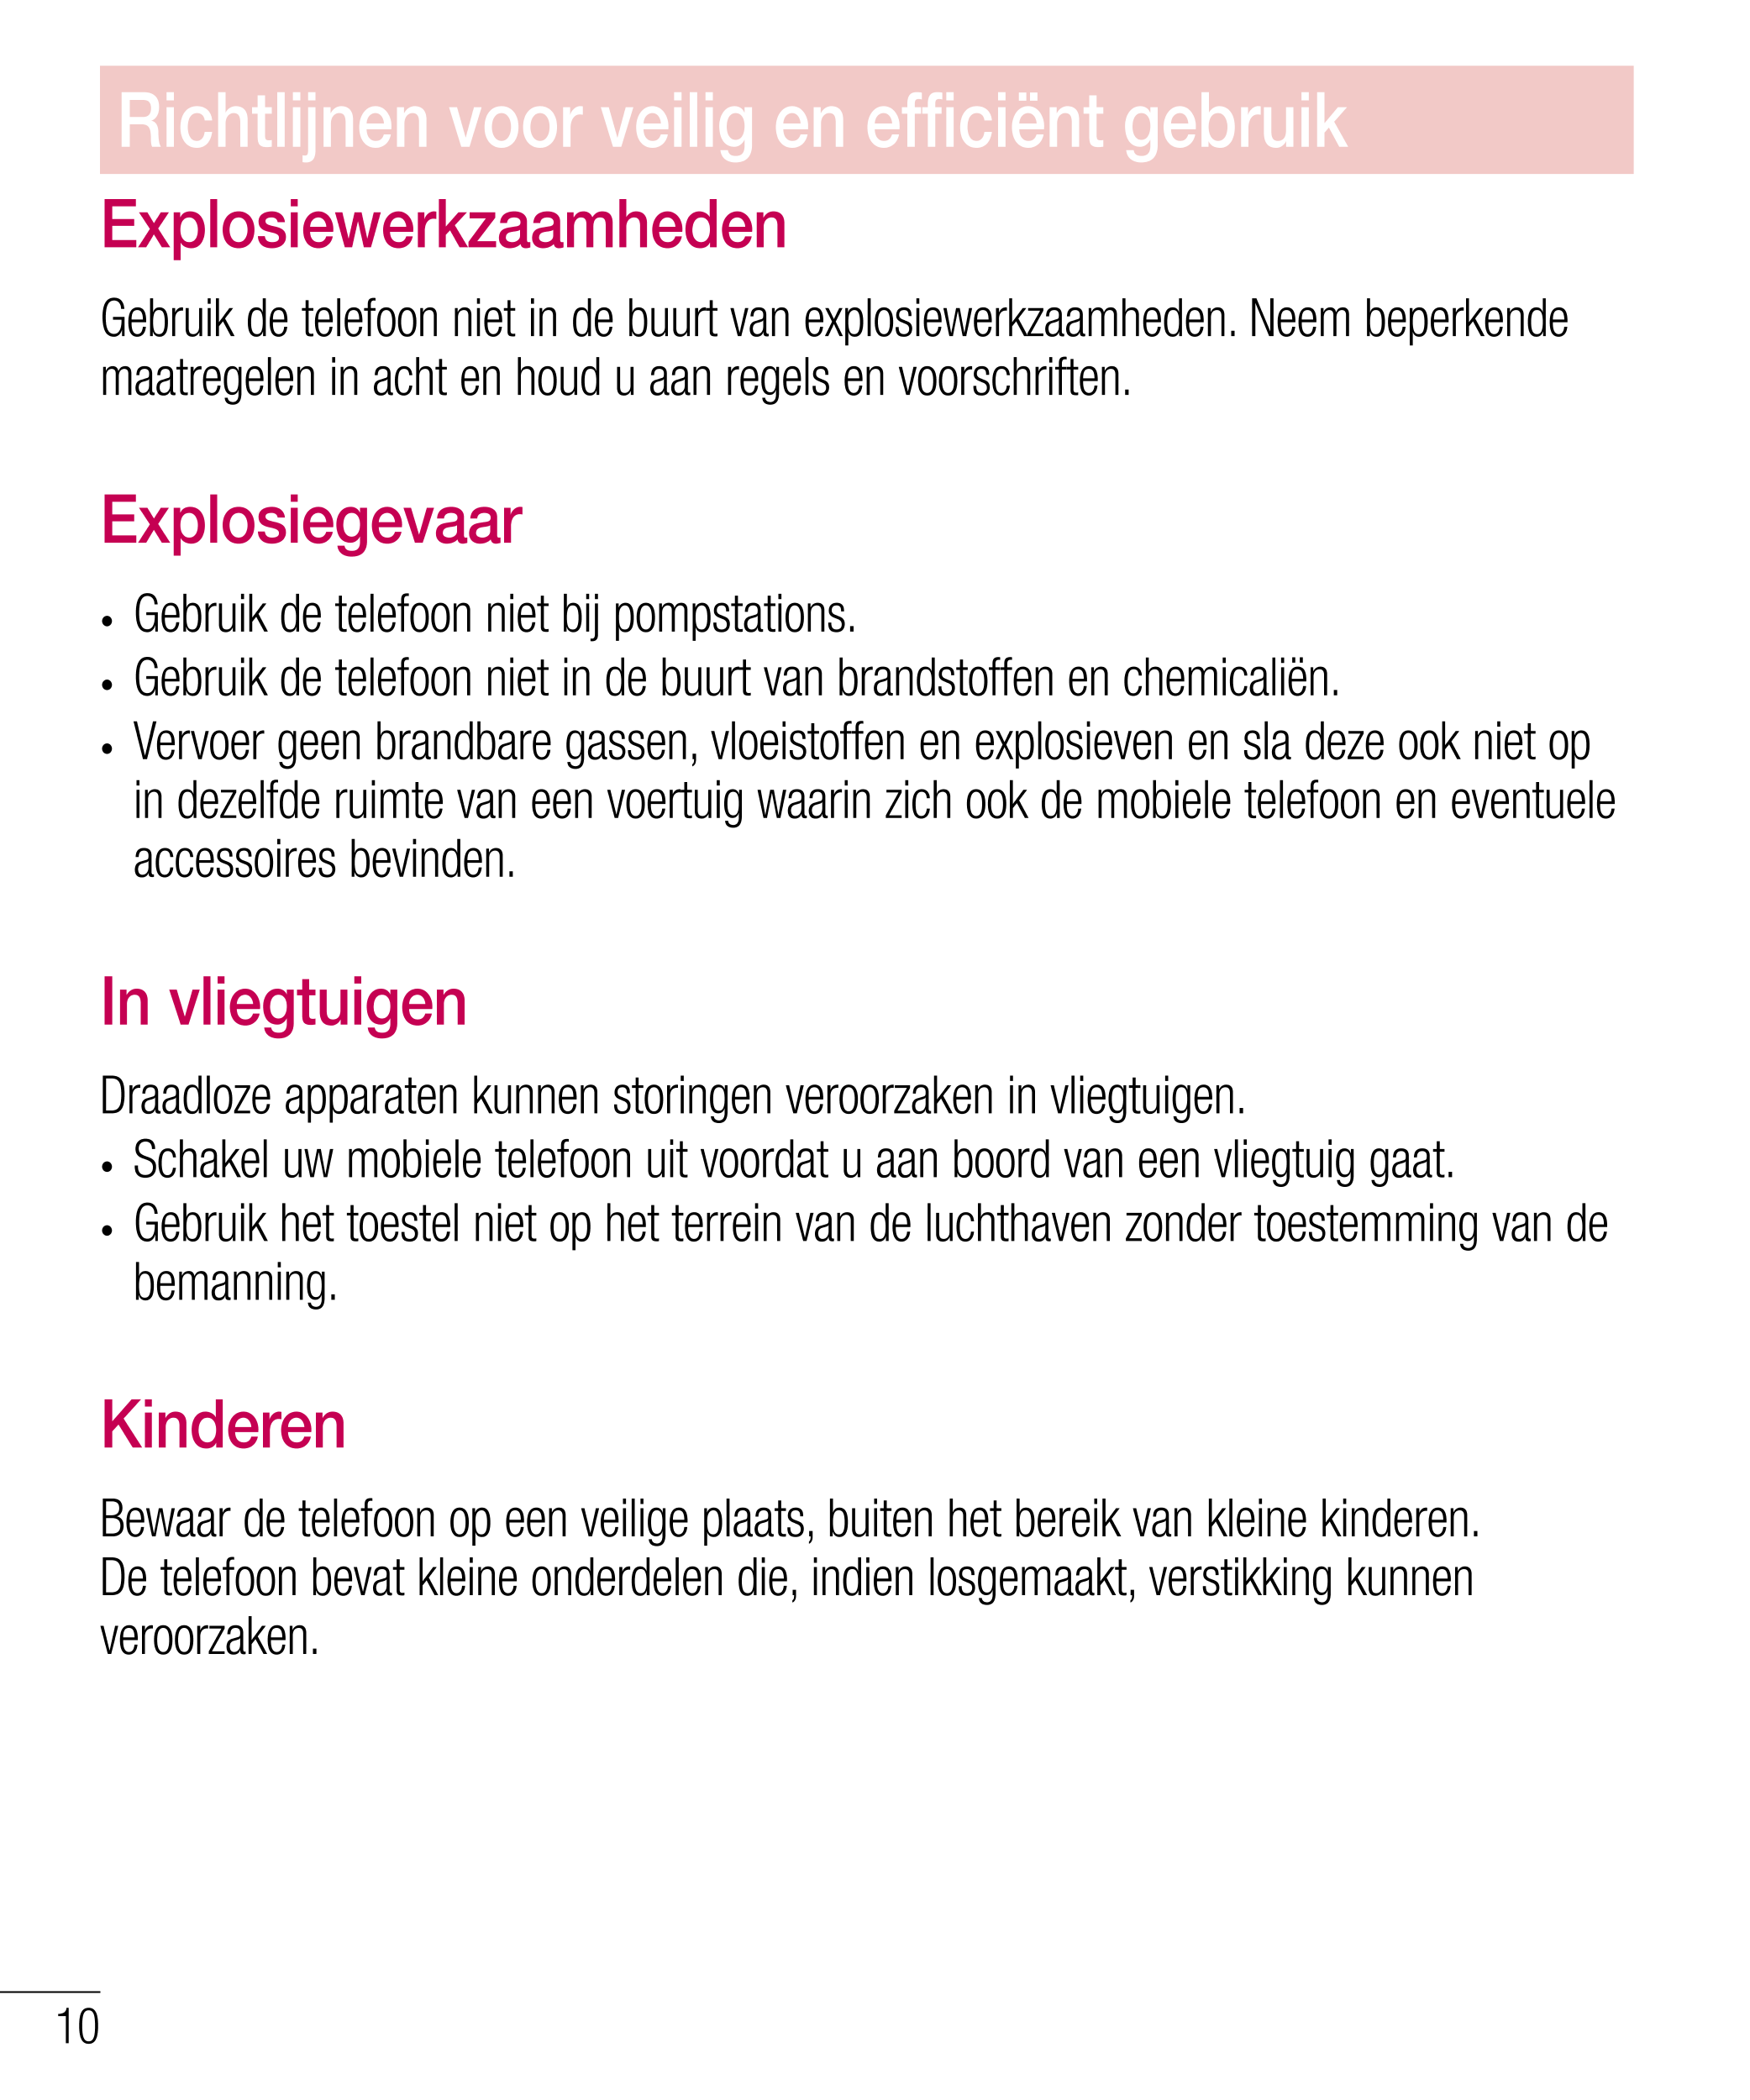 Richtlĳnen voor veilig en efﬁciënt gebruik
Explosiewerkzaamheden
Gebruik de telefoon niet in de buurt van explosiewerkzaamheden.